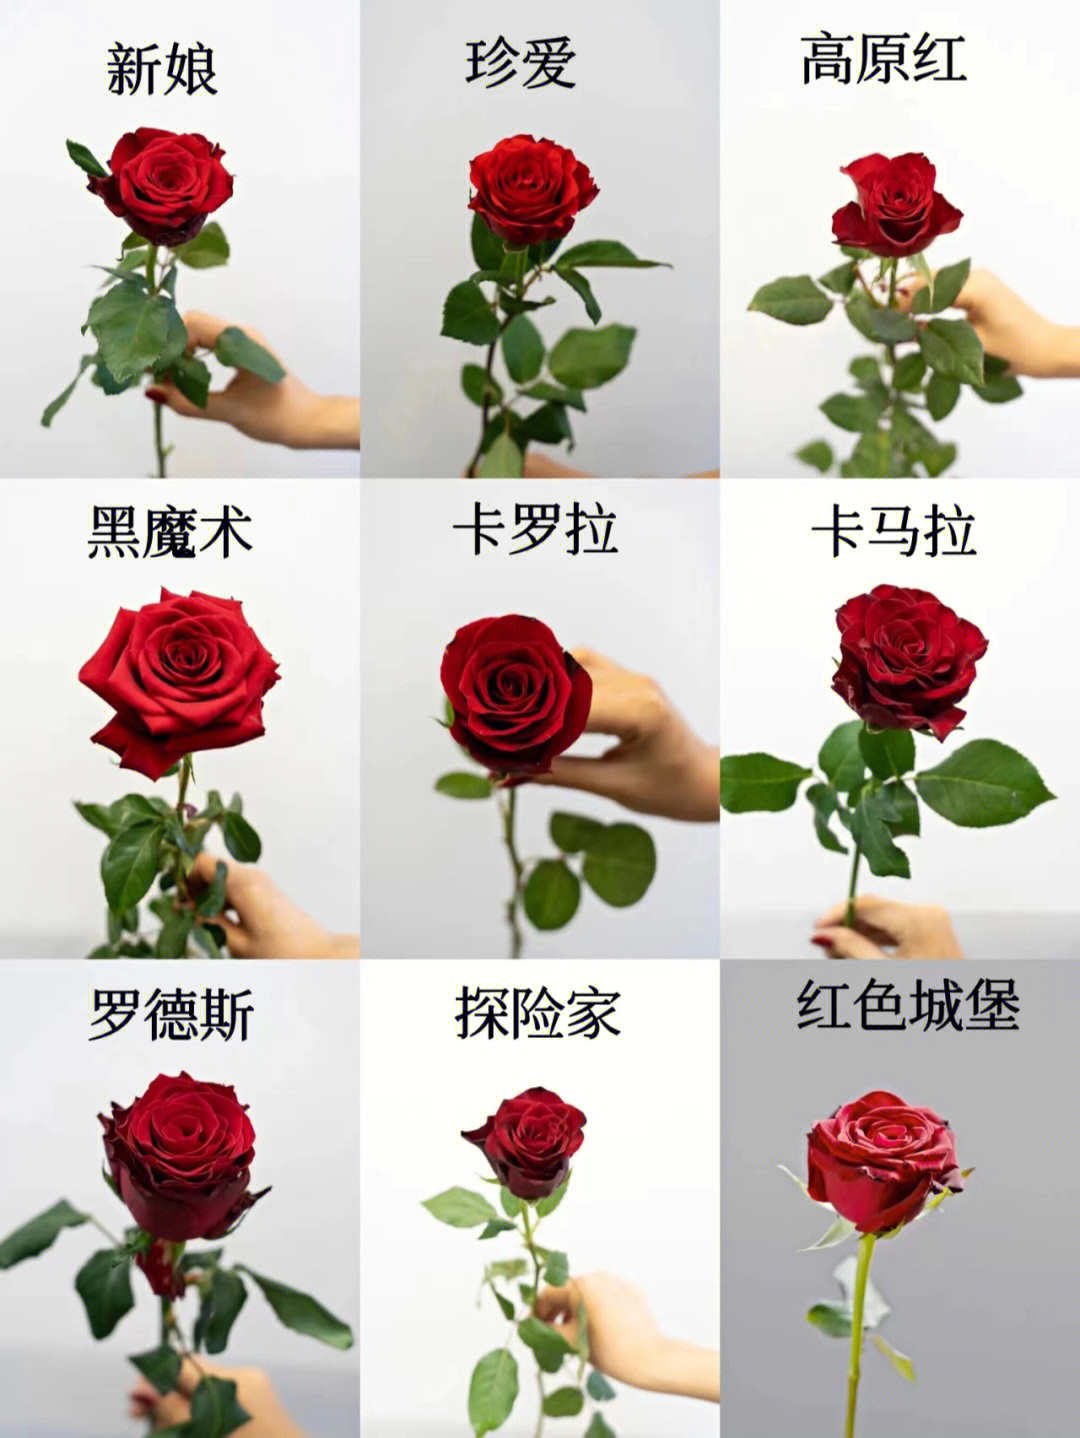 红玫瑰品种